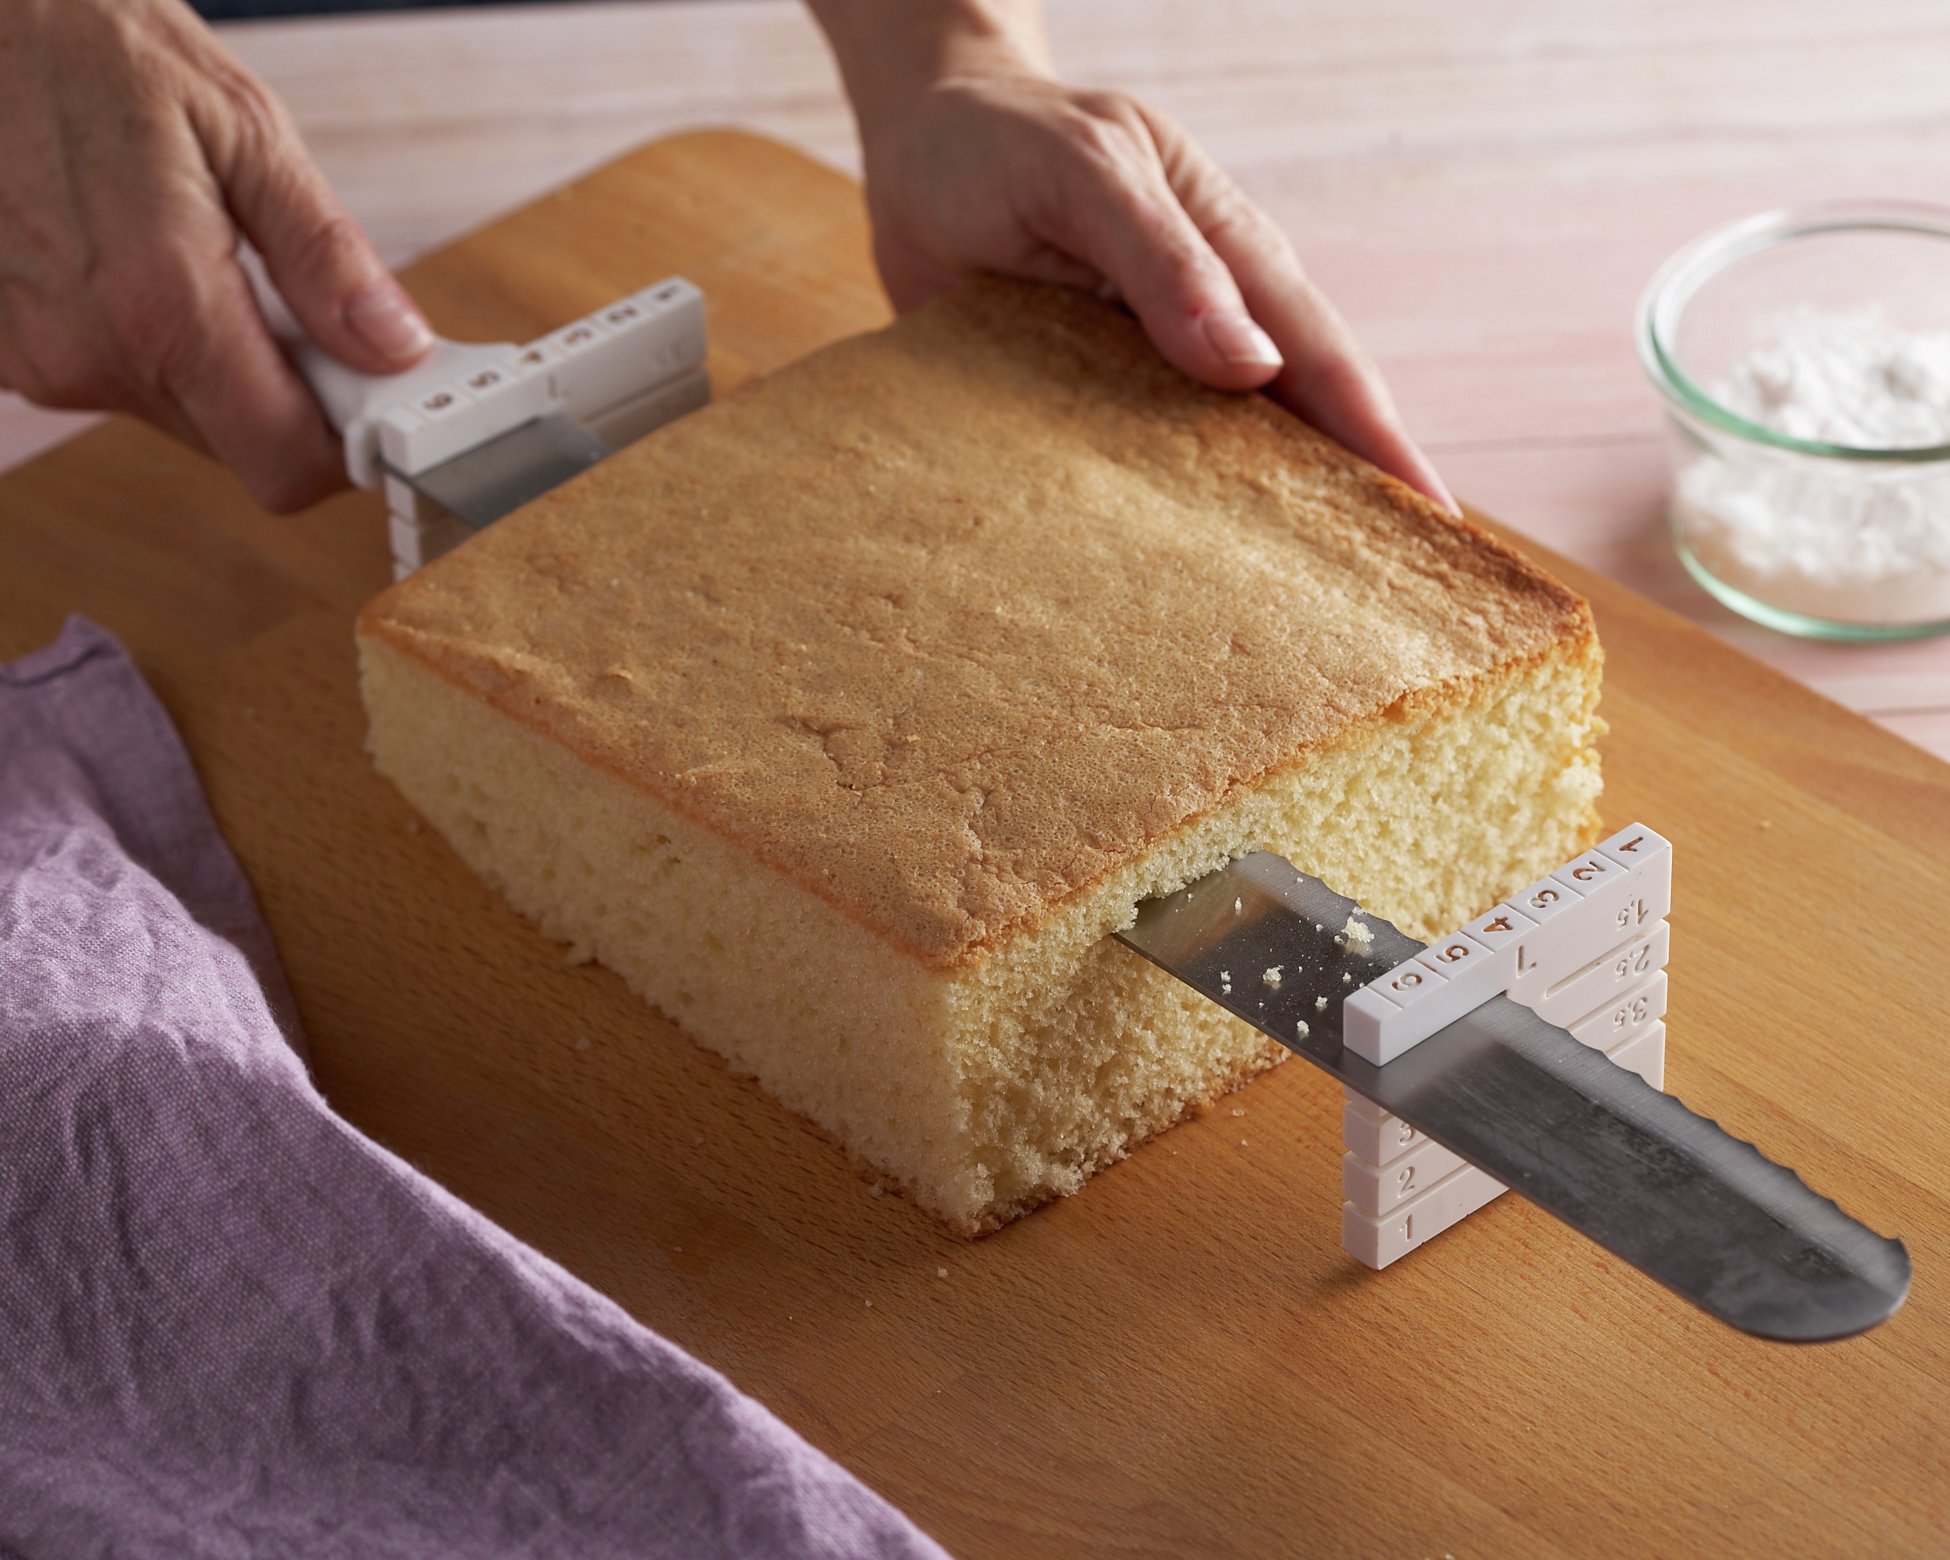 El pastelero cortando fondant blanco en Foto de stock 1816994339